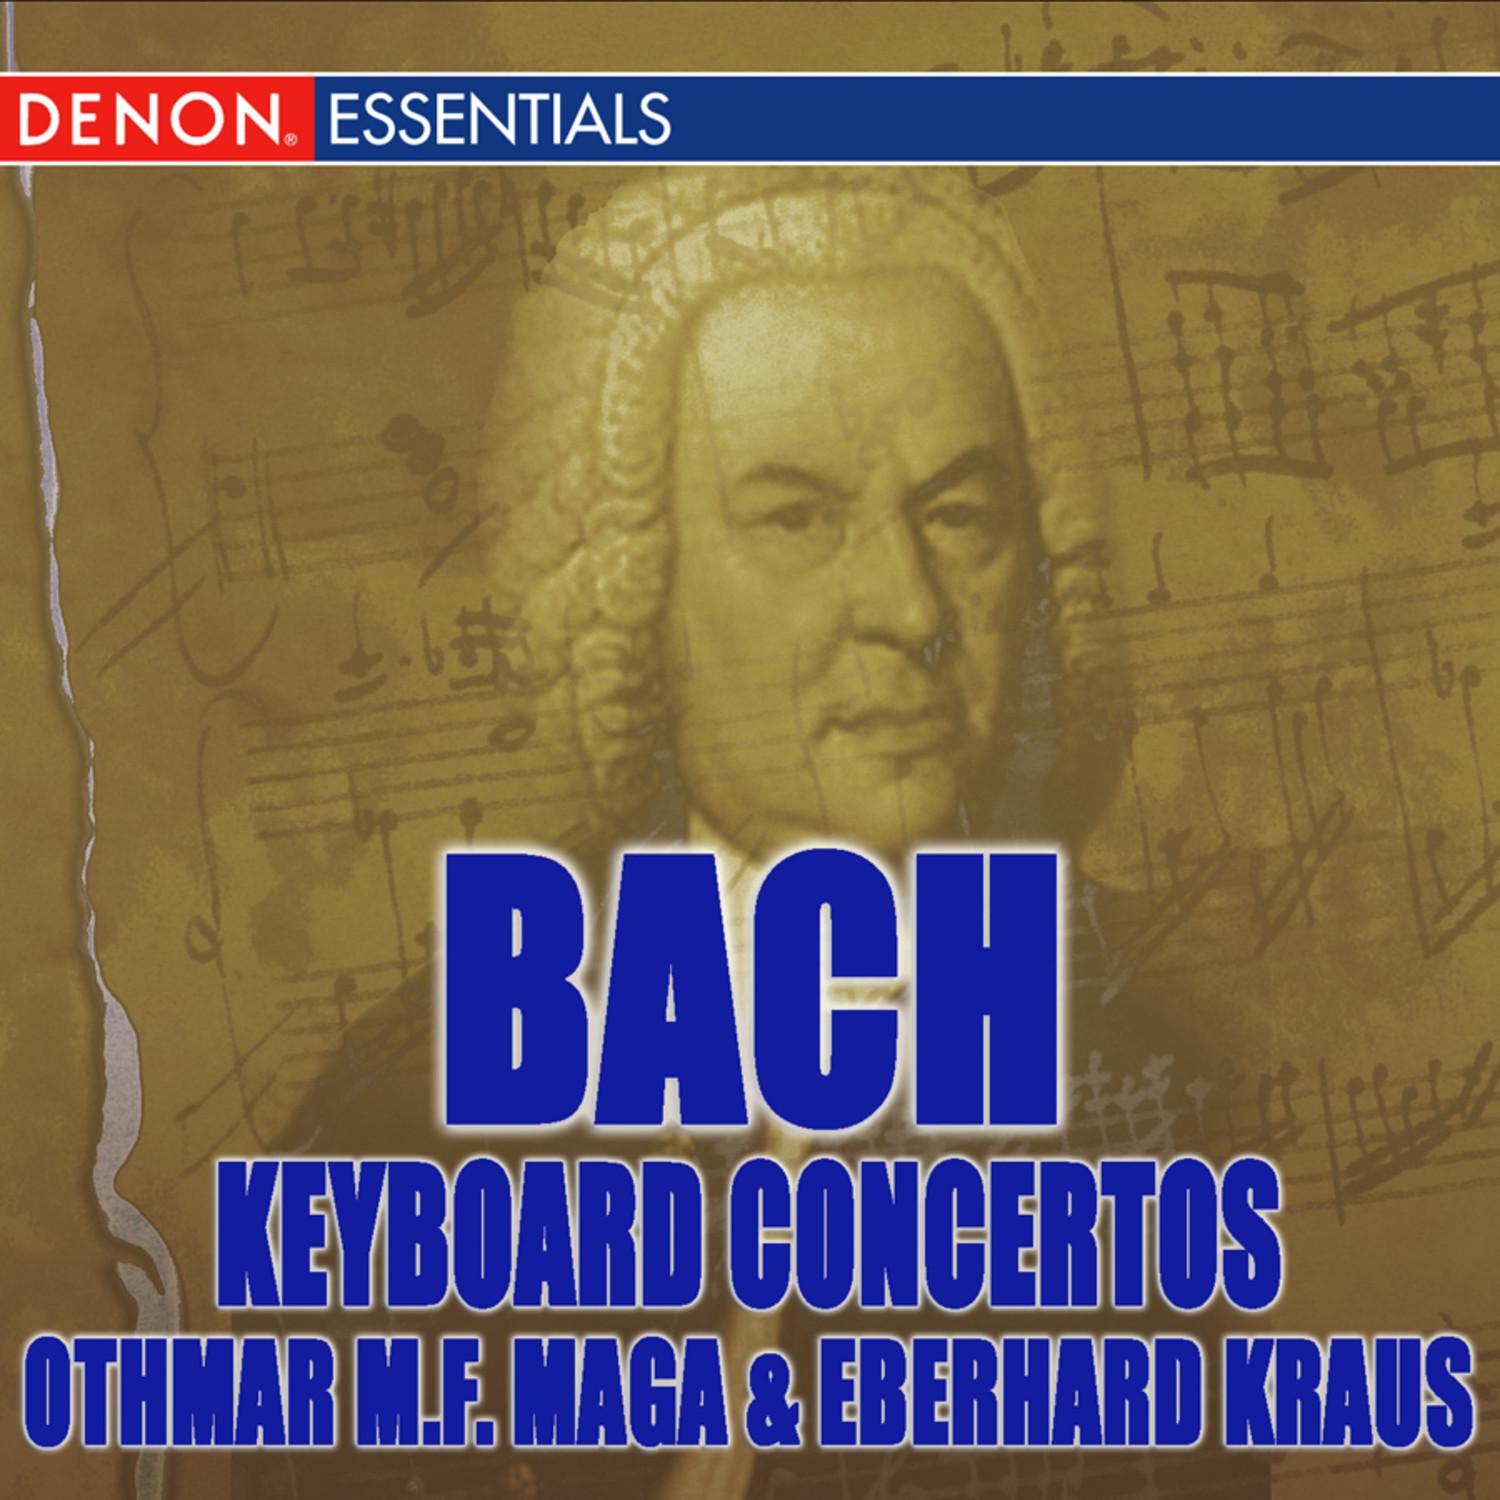 Concerto IV for Piano and Orchestra in A Major, BWV 1055: III. Allegro ma non tanto